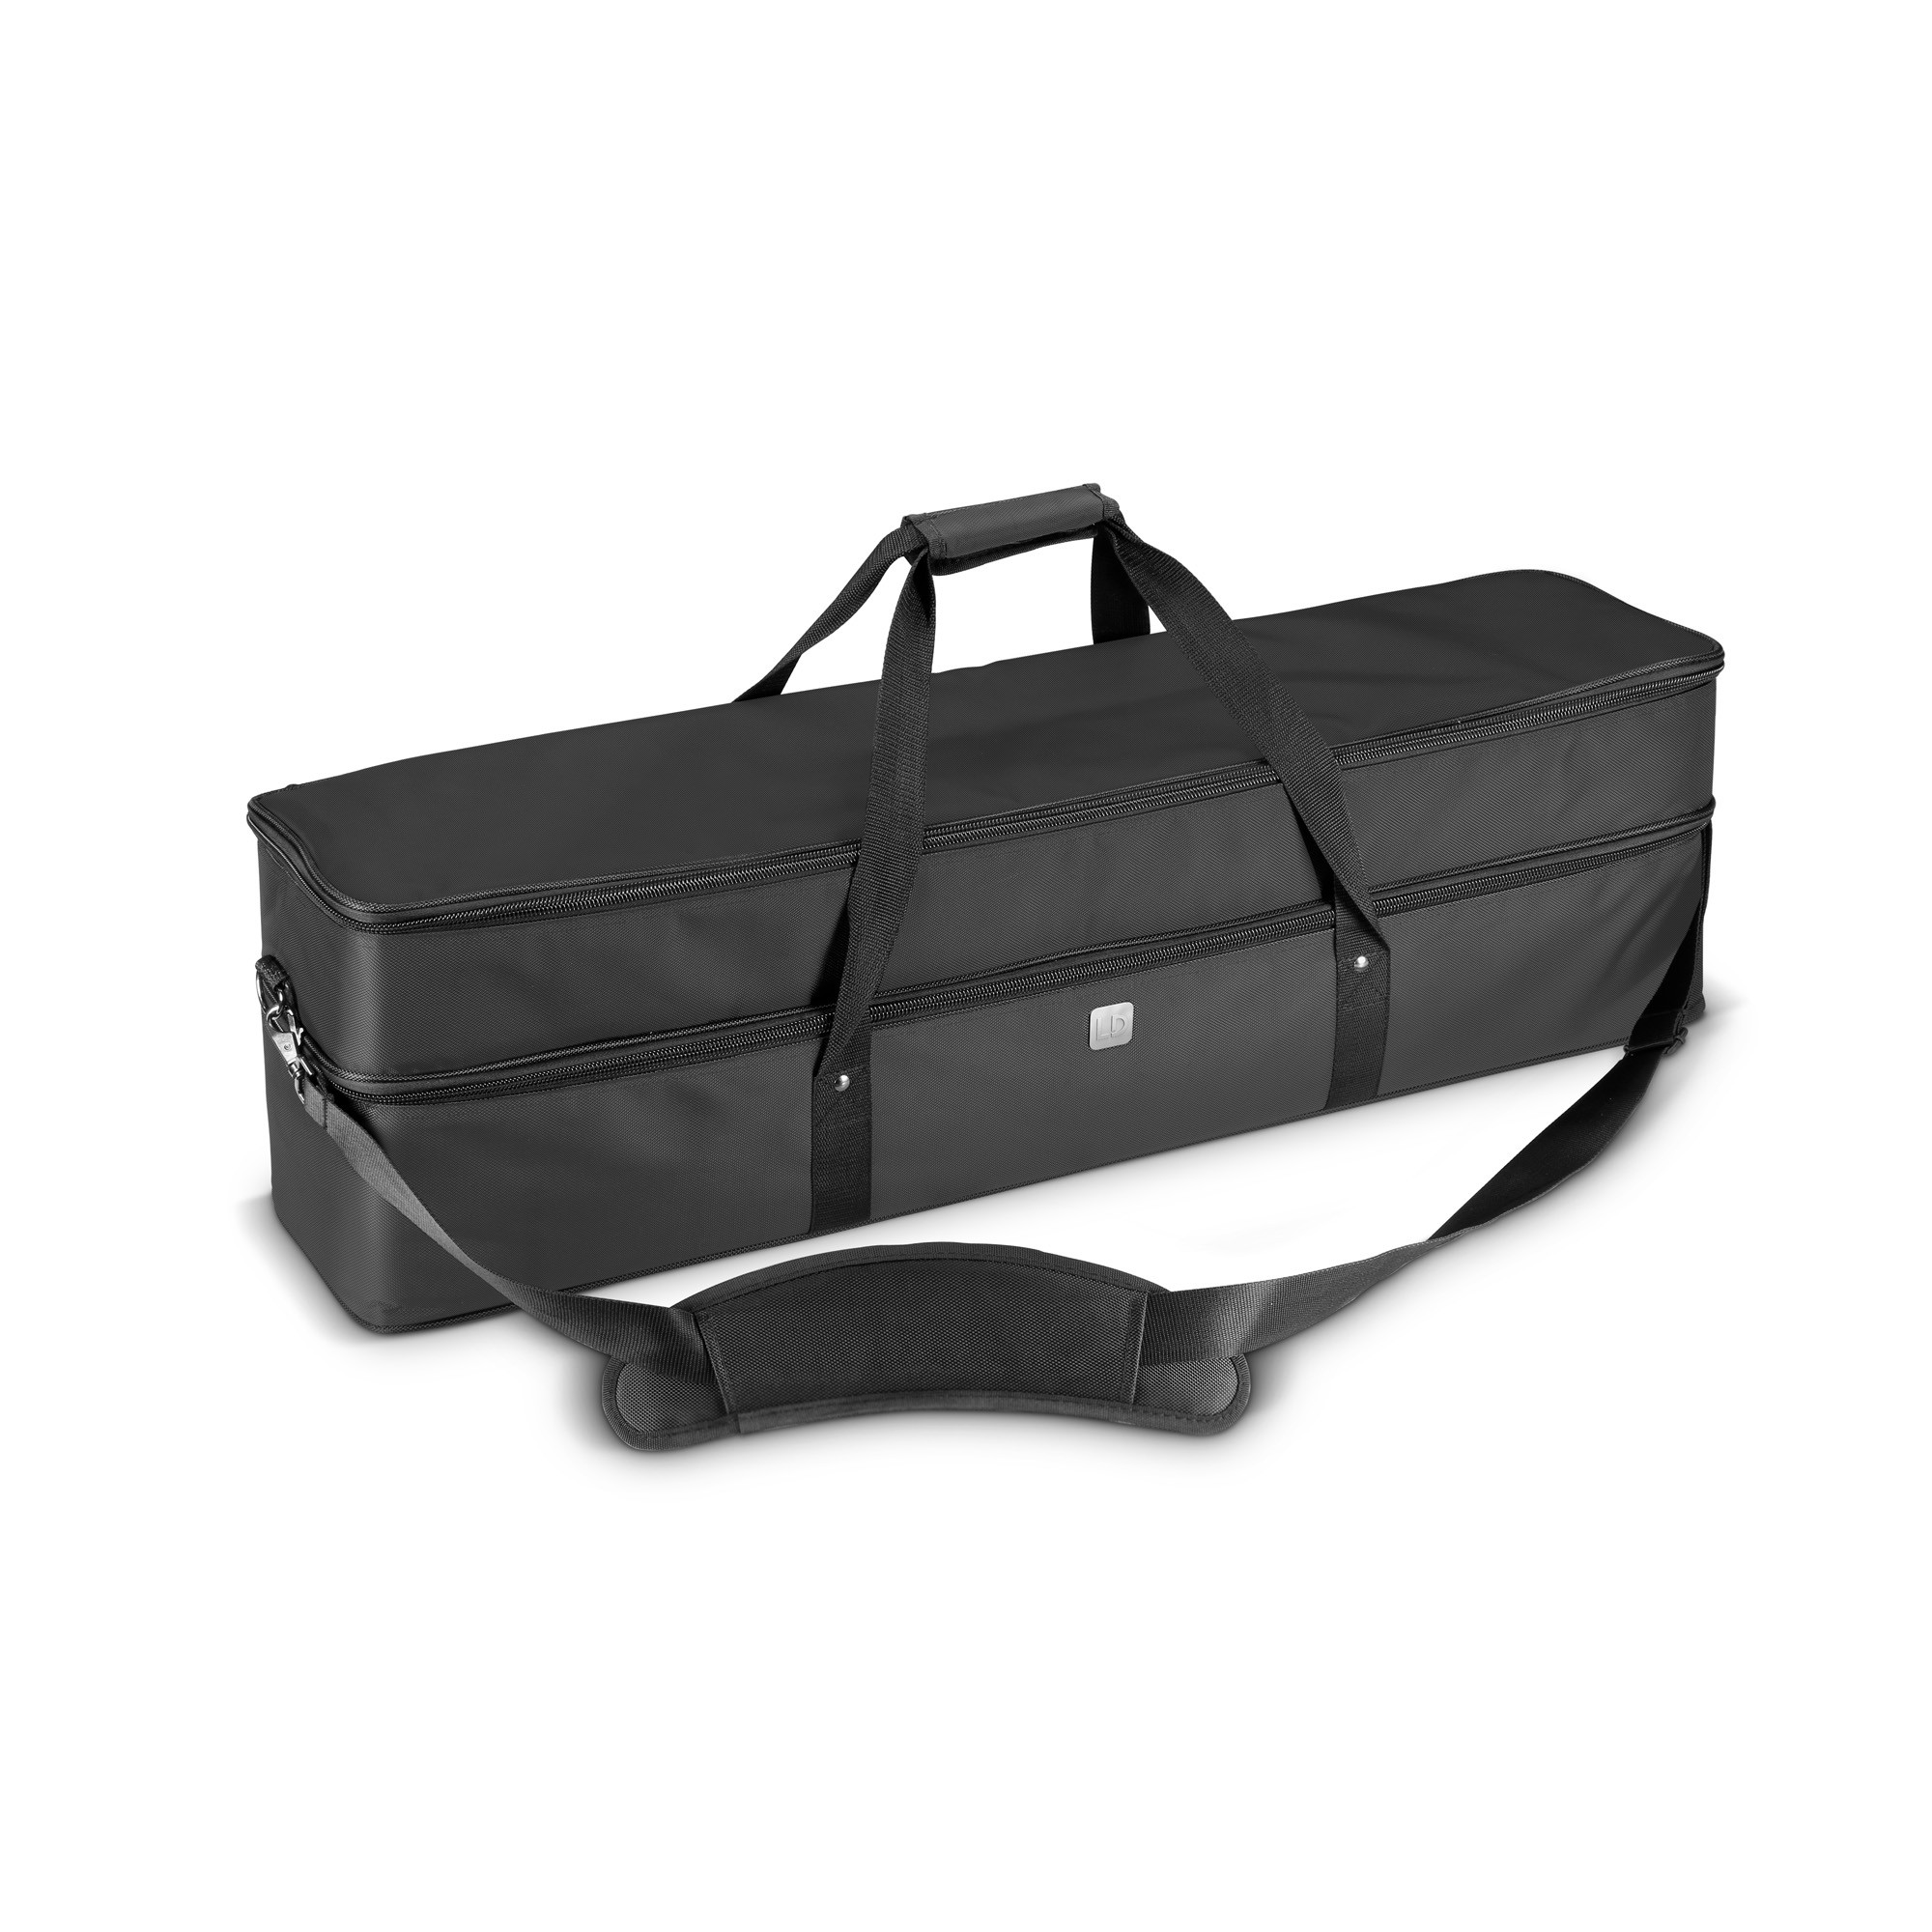 Ld Systems Curv 500 Ts Sat Bag - Bag for speakers & subwoofer - Variation 7